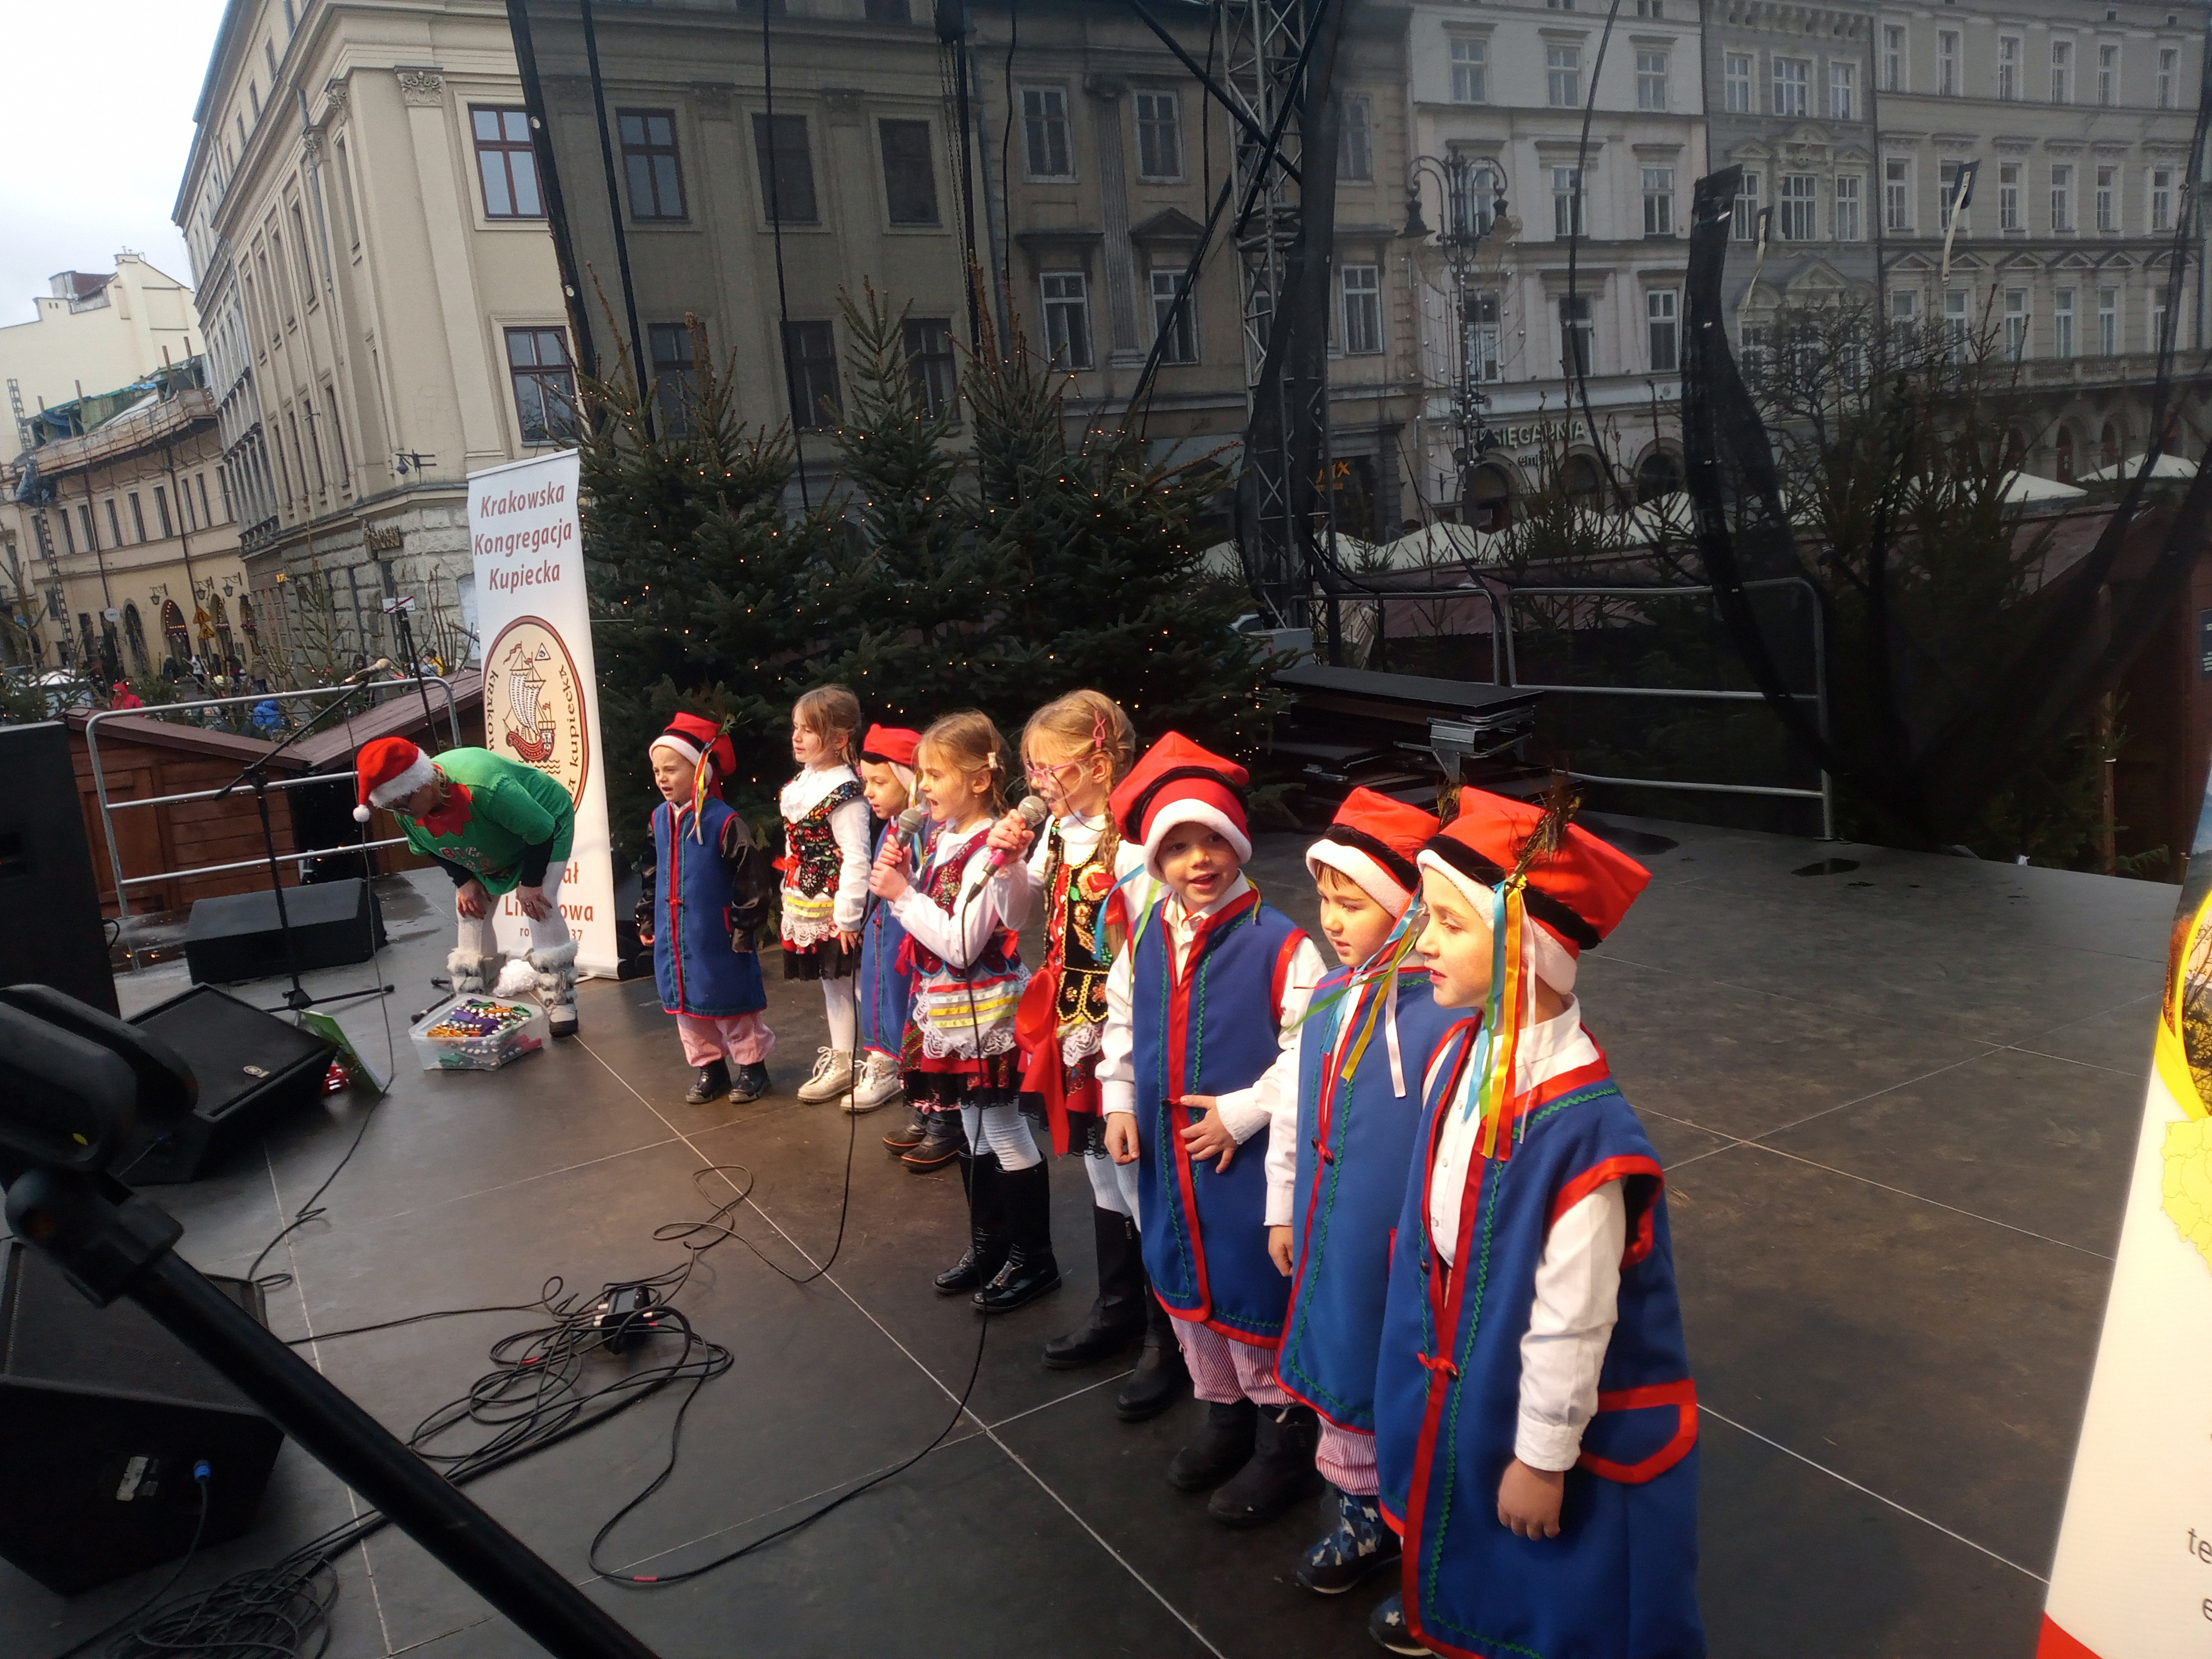 Zdjecie przedstawiajace grupę dzieci w krakowskich strojach ludowych podczas występu na sceie